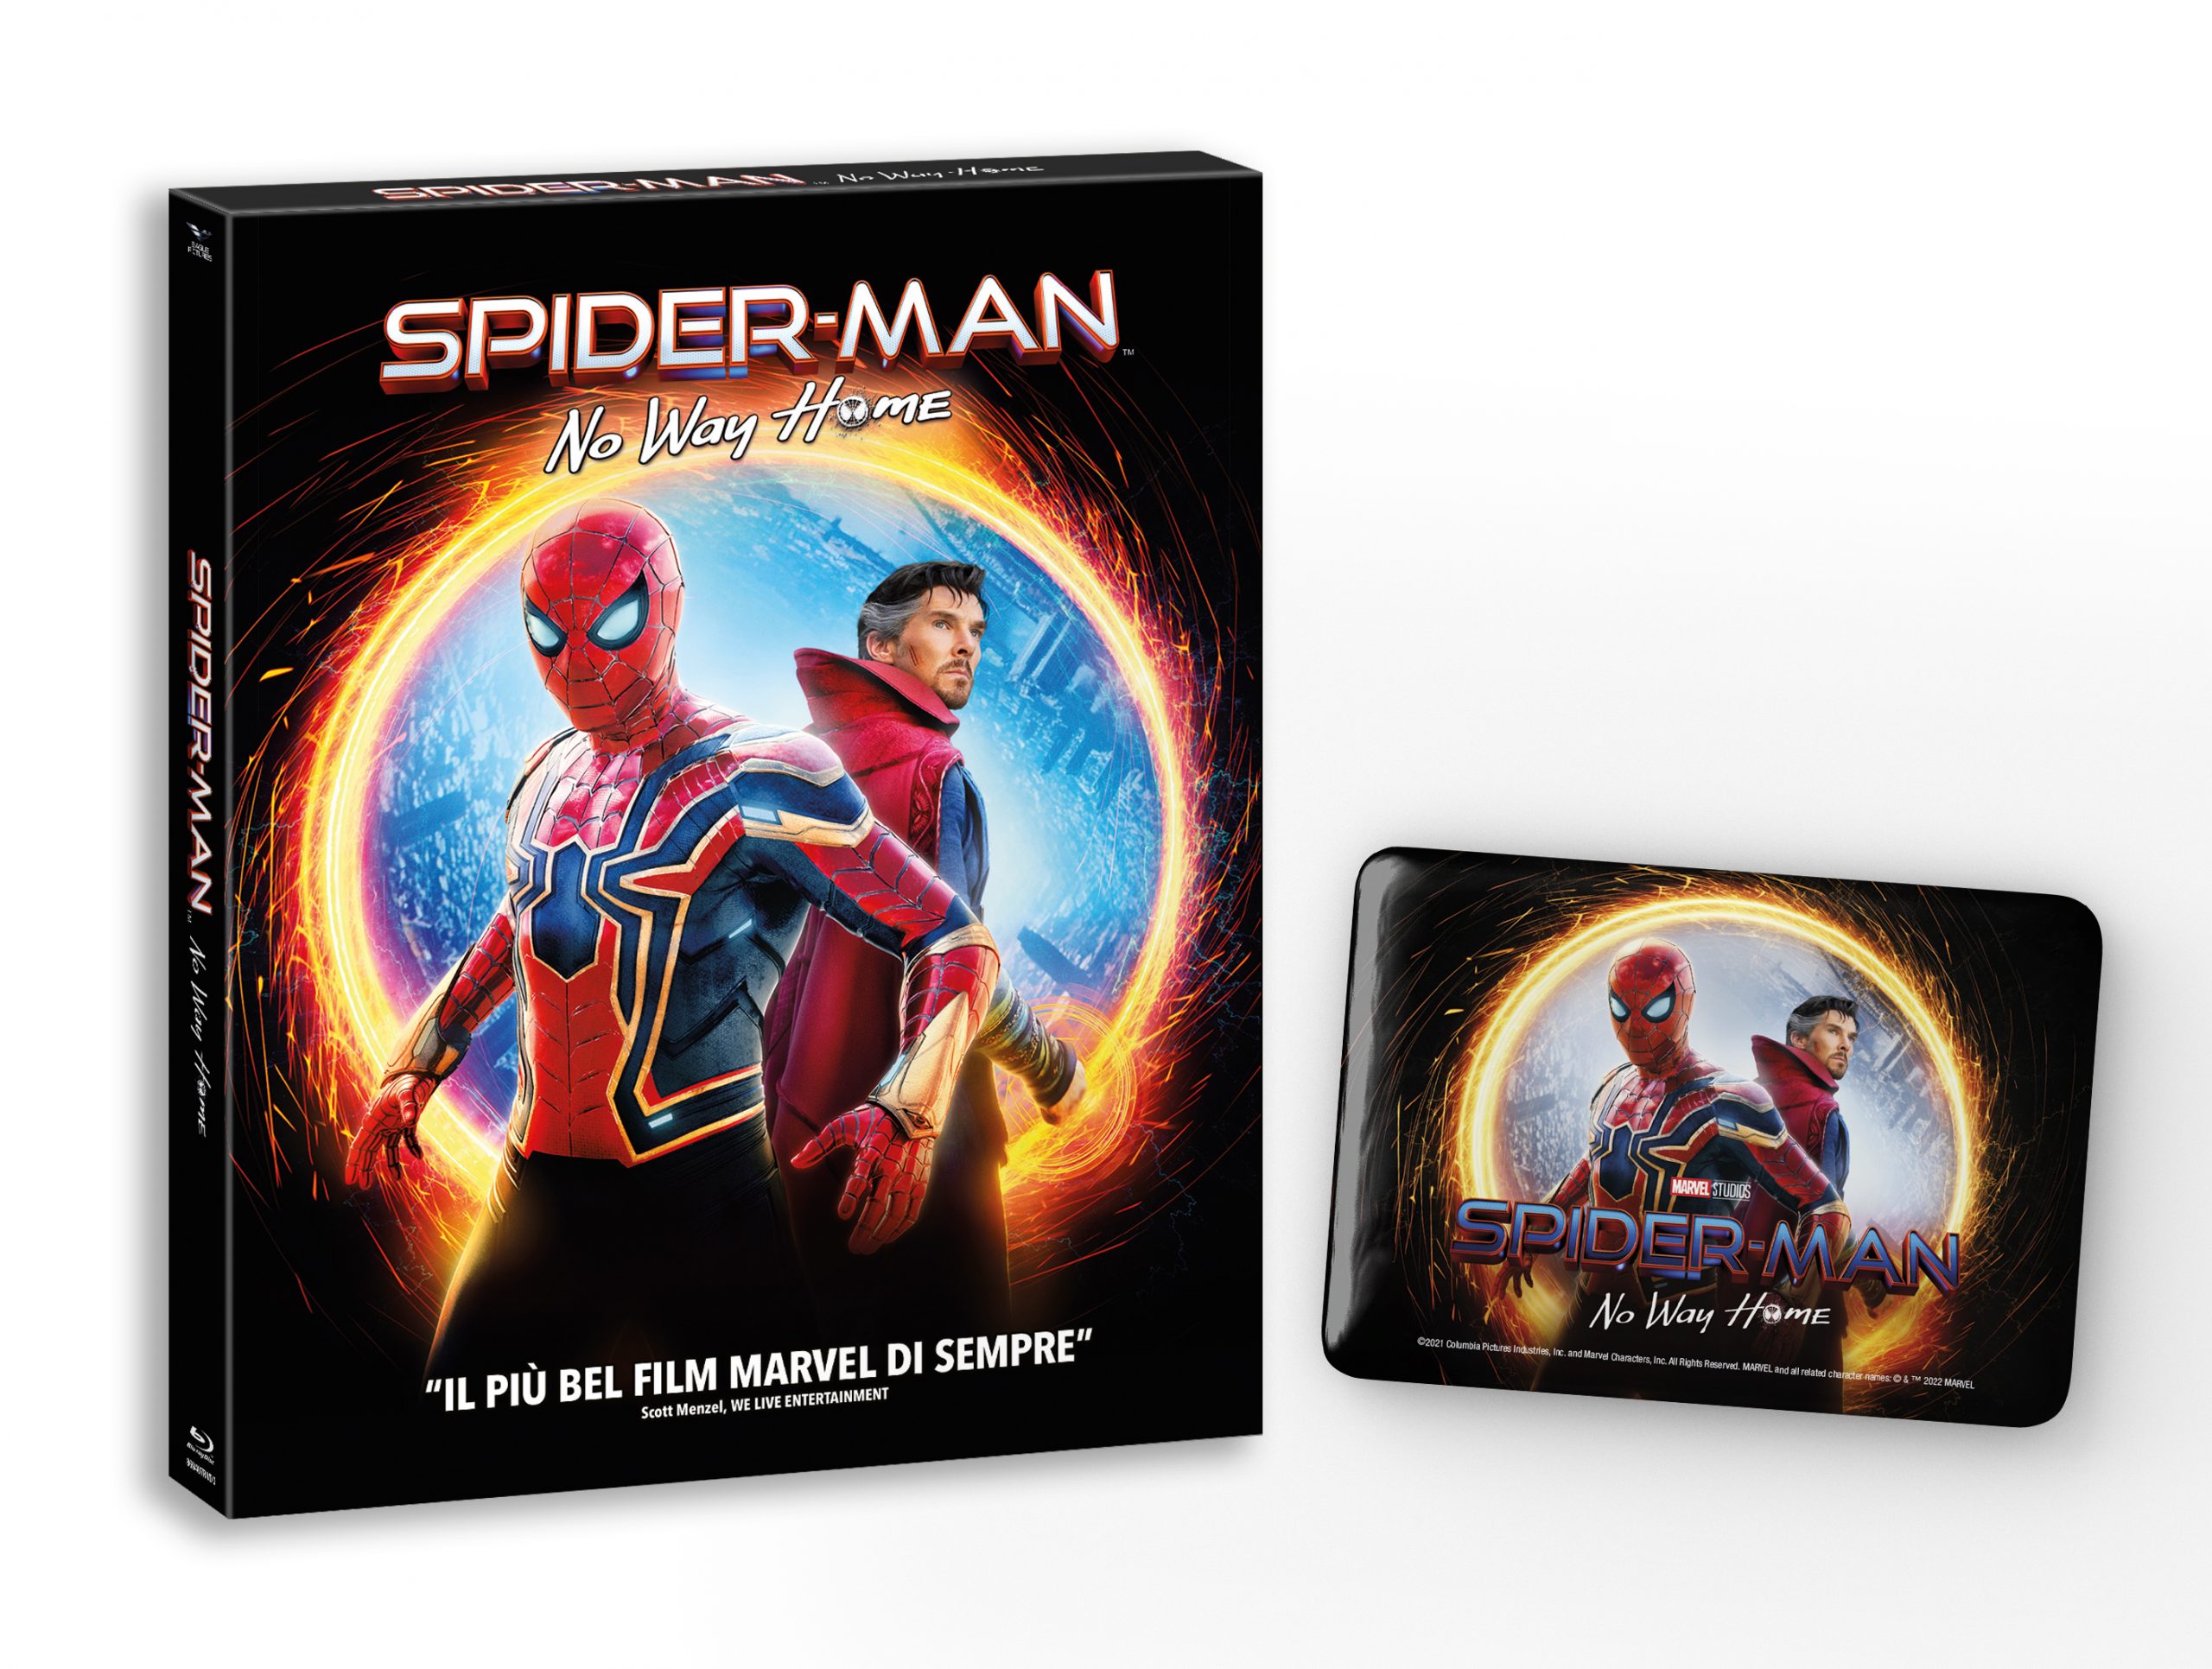 L'edizione Blu-ray di Spider-Man: No Way Home con la calamita da collezione